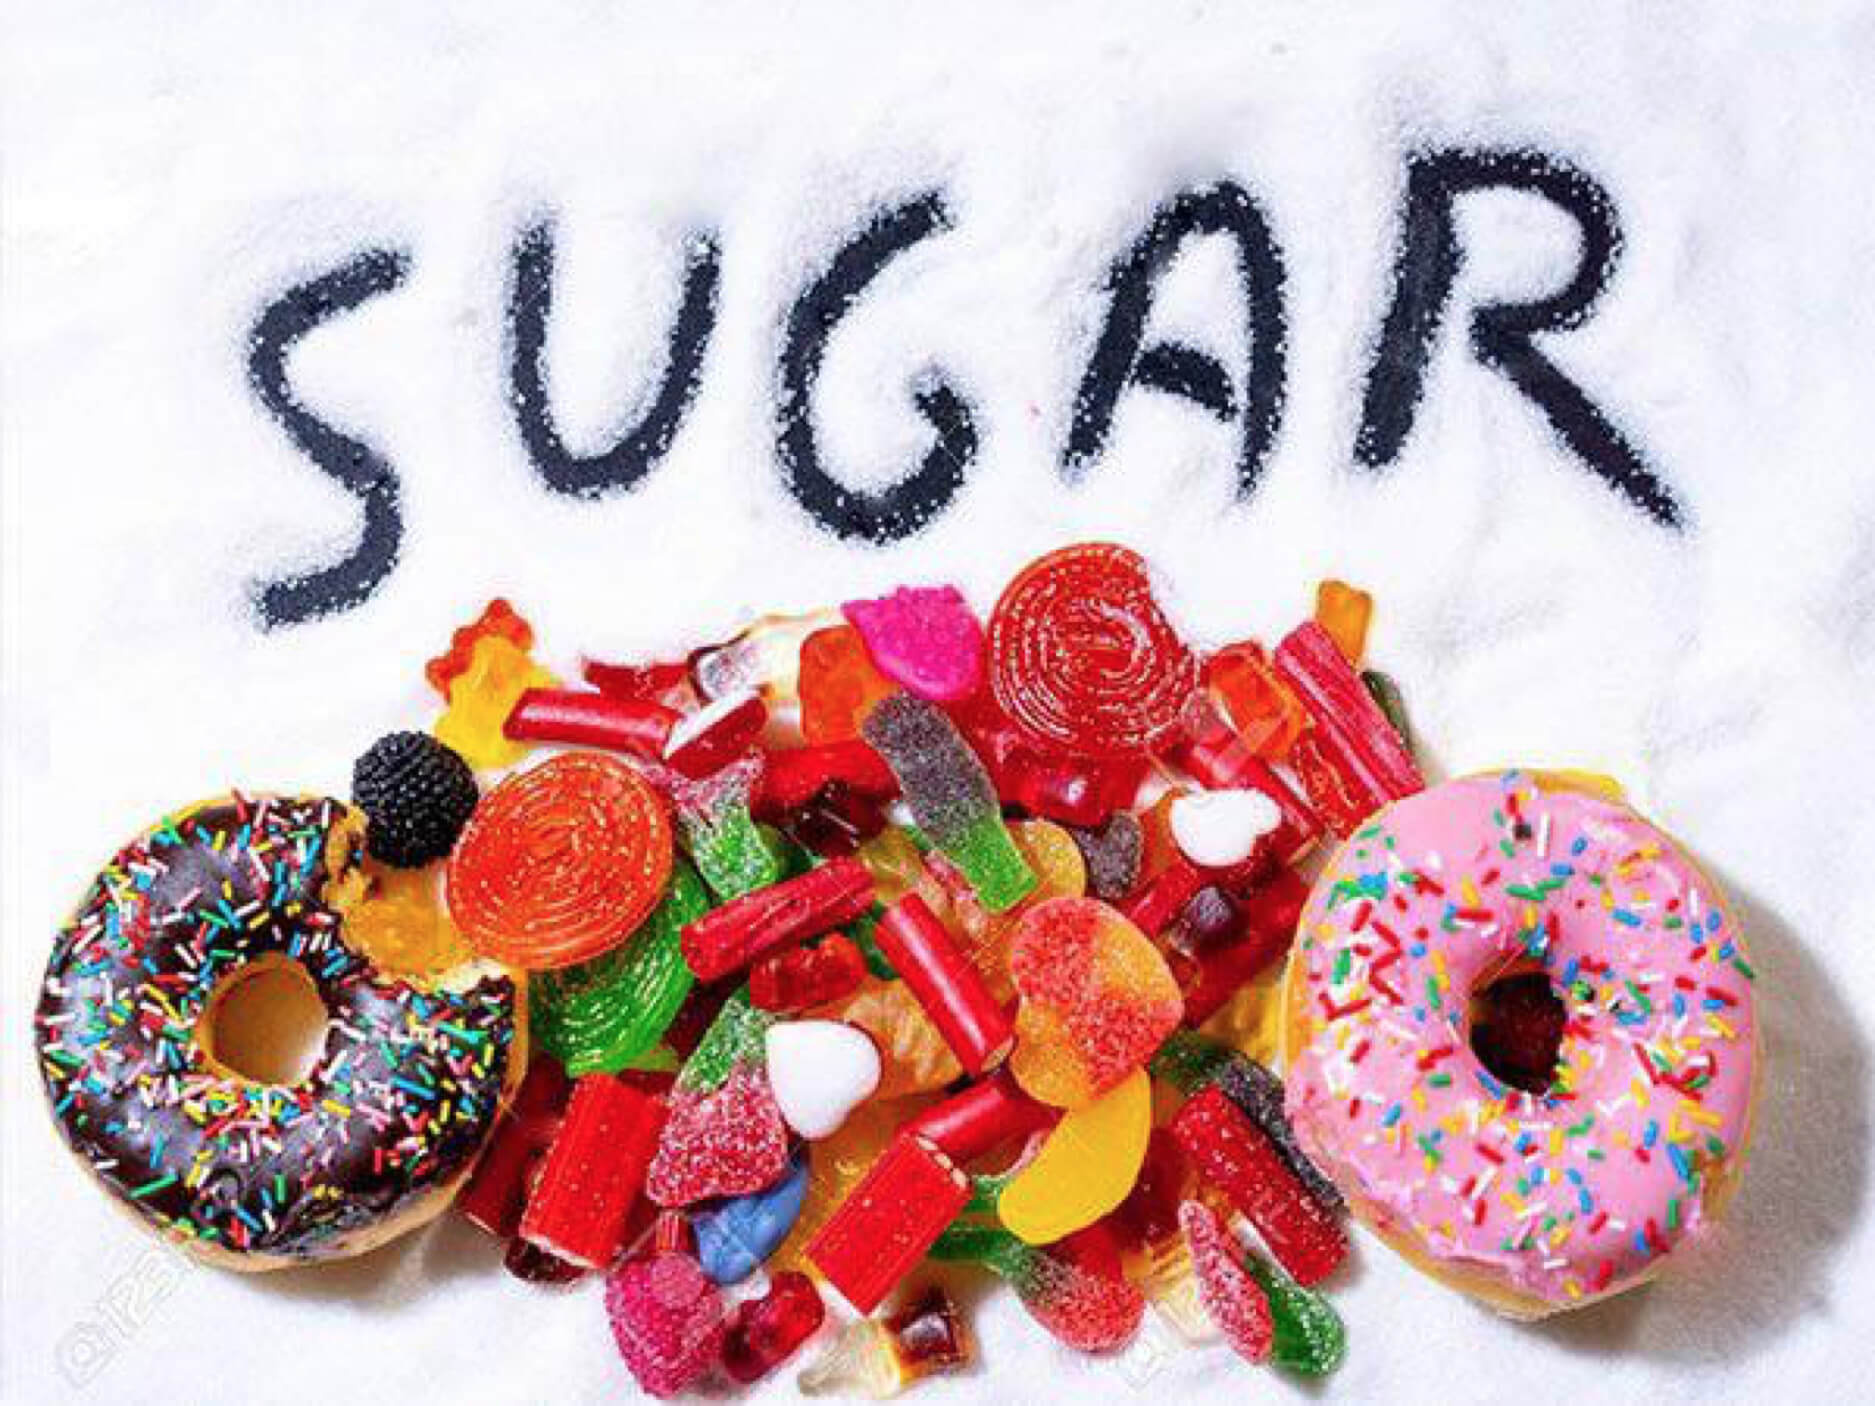 Ăn đồ ngọt quá nhiều sẽ dẫn tới nguy cơ tiểu đường thai kỳ, đái tháo đường,...